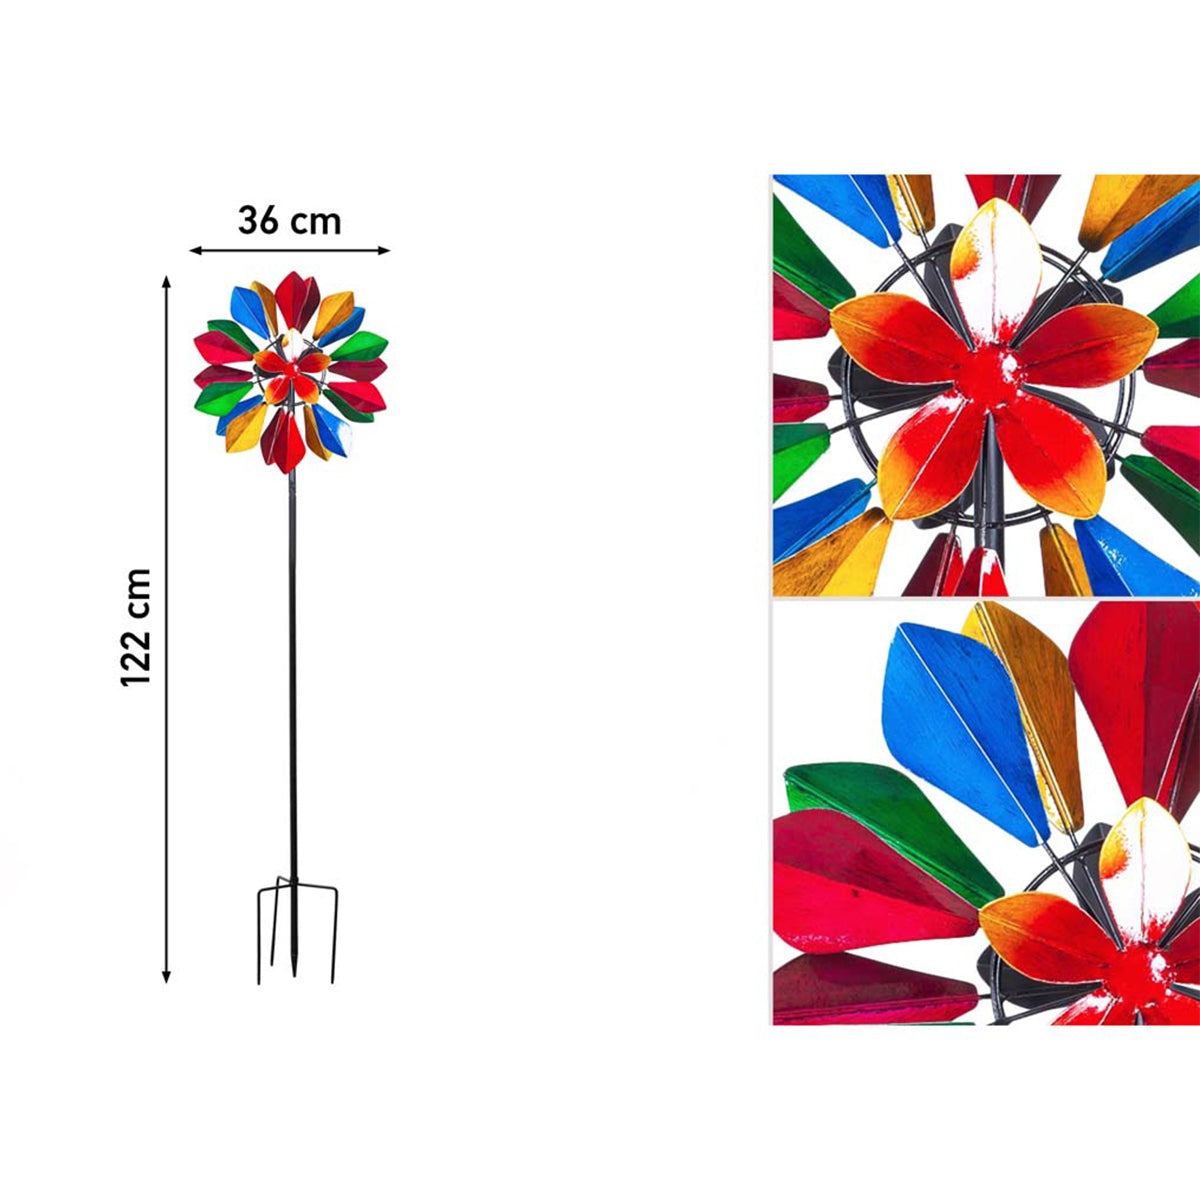 Kinetic Art Metall Windrad Multi-colored Flower Duett Windspiel Doppel Windrad Gartendeko